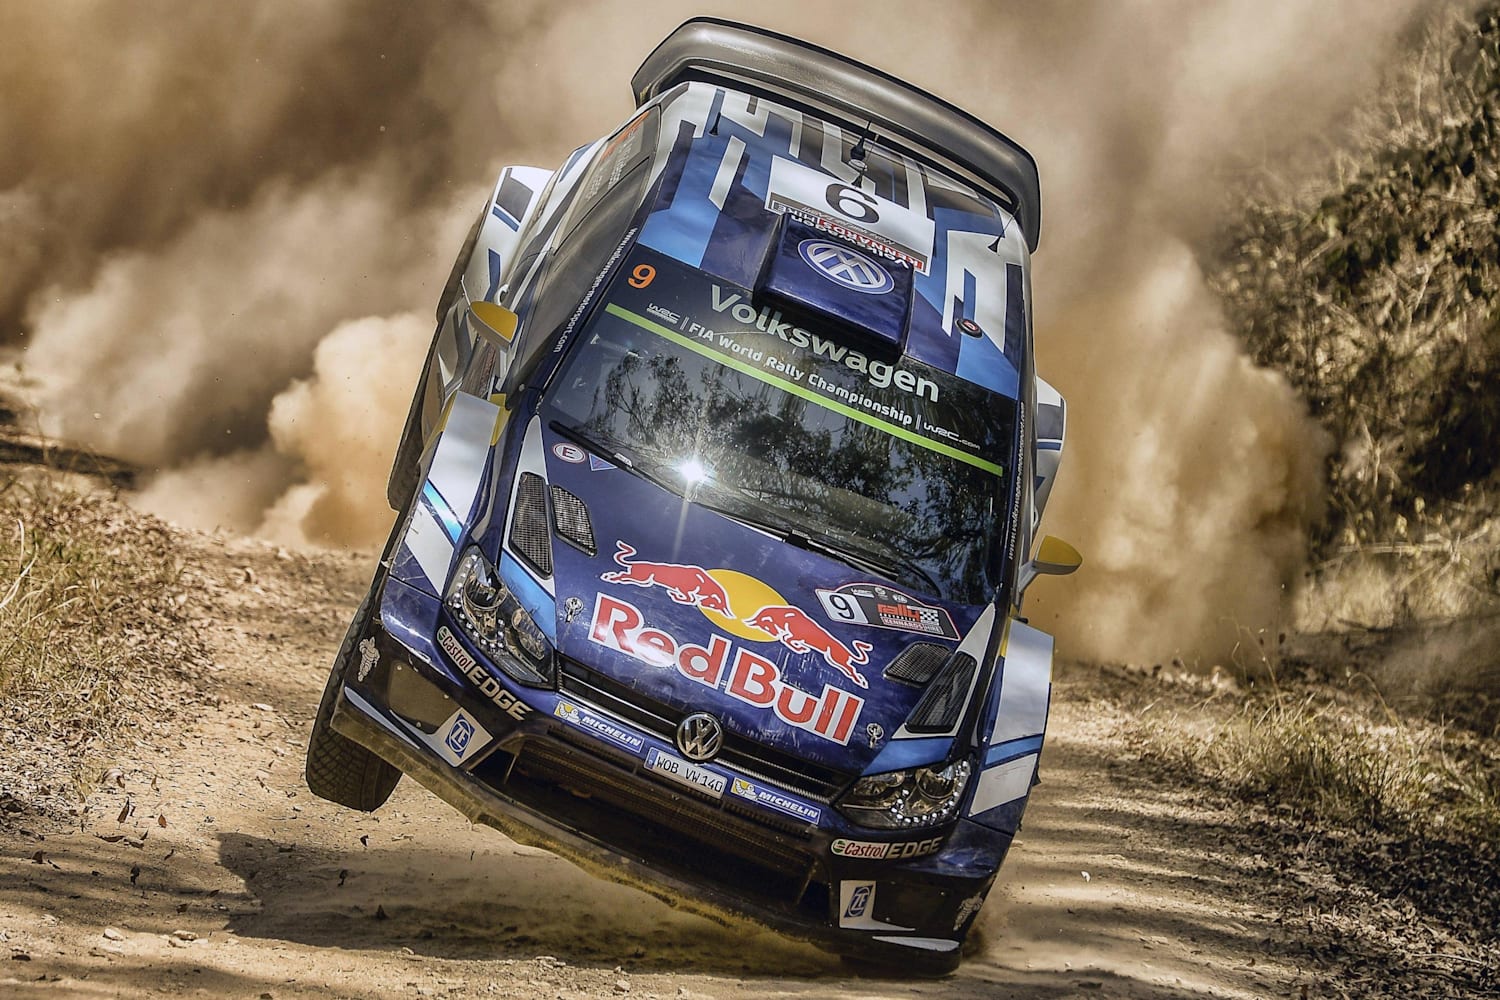 【Red Bull TVで生中継】WRCの驚愕ラリーバトルをその目にやきつけろ